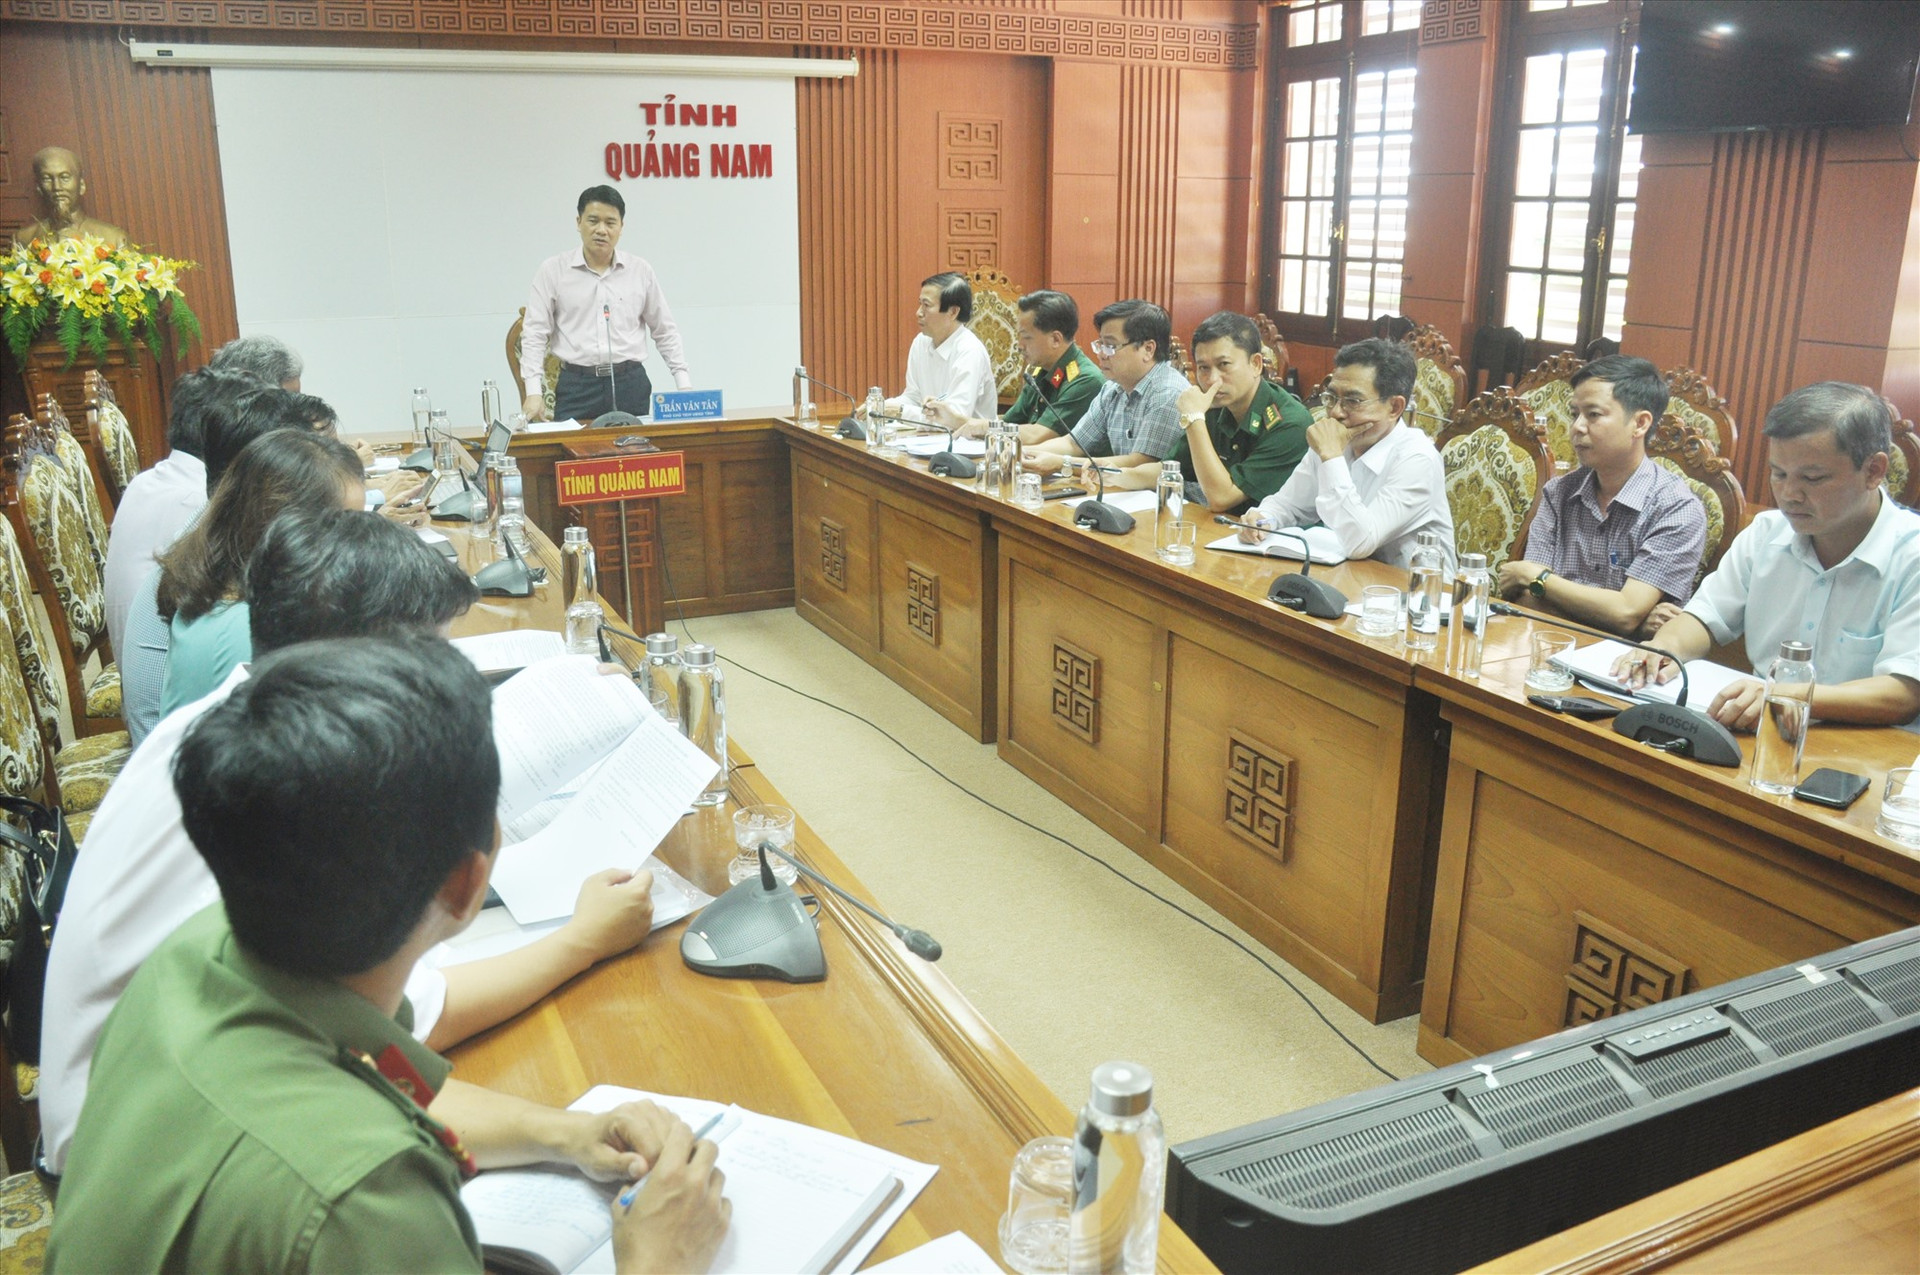 Chiều 24.7, Phó Chủ tịch UBND tỉnh Trần Văn Tân chủ trì cuộc họp và có chỉ đạo cụ thể cho các ngành, địa phương của tỉnh triển khai các biện pháp phòng chống dịch bệnh Covid-19. Ảnh: N.Đ